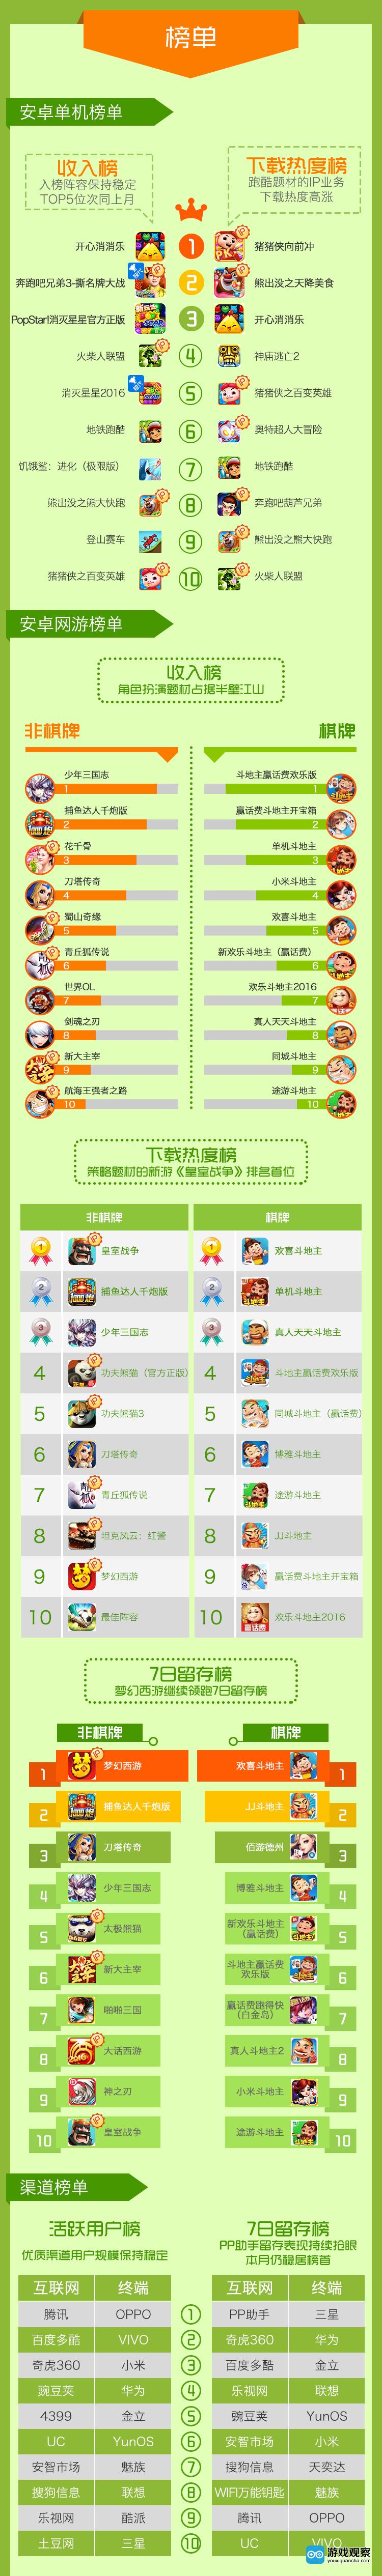 中国移动咪咕游戏日前发布了2016年4月手游数据报告